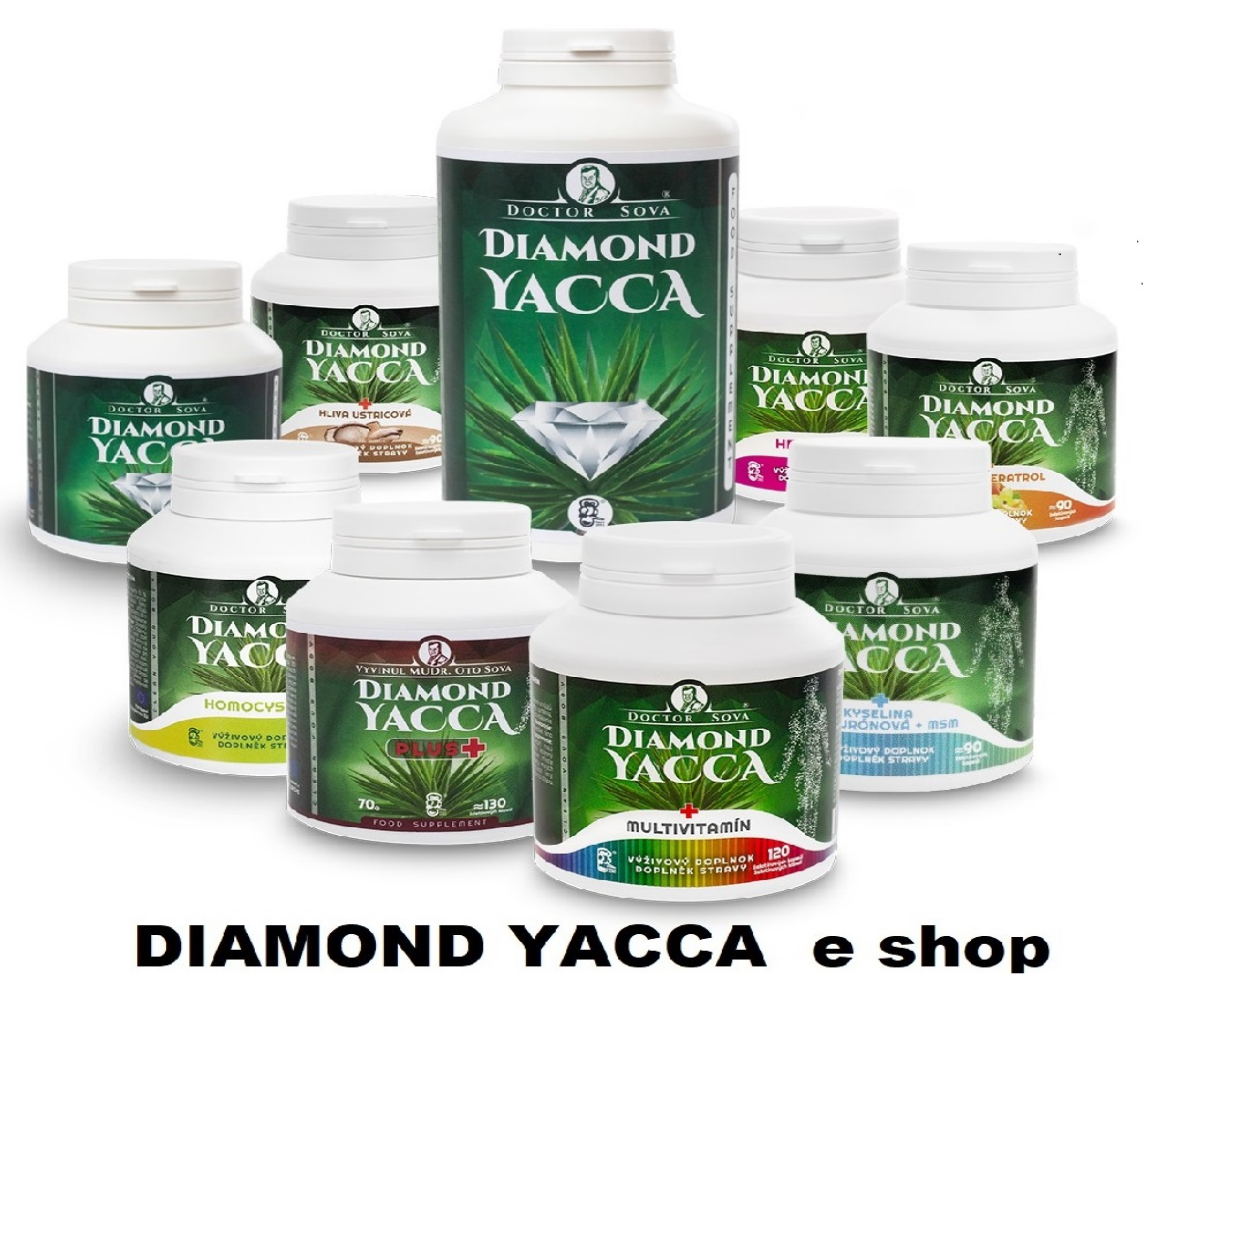 Diamond Yacca je saponinový doplněk stravy nové generace